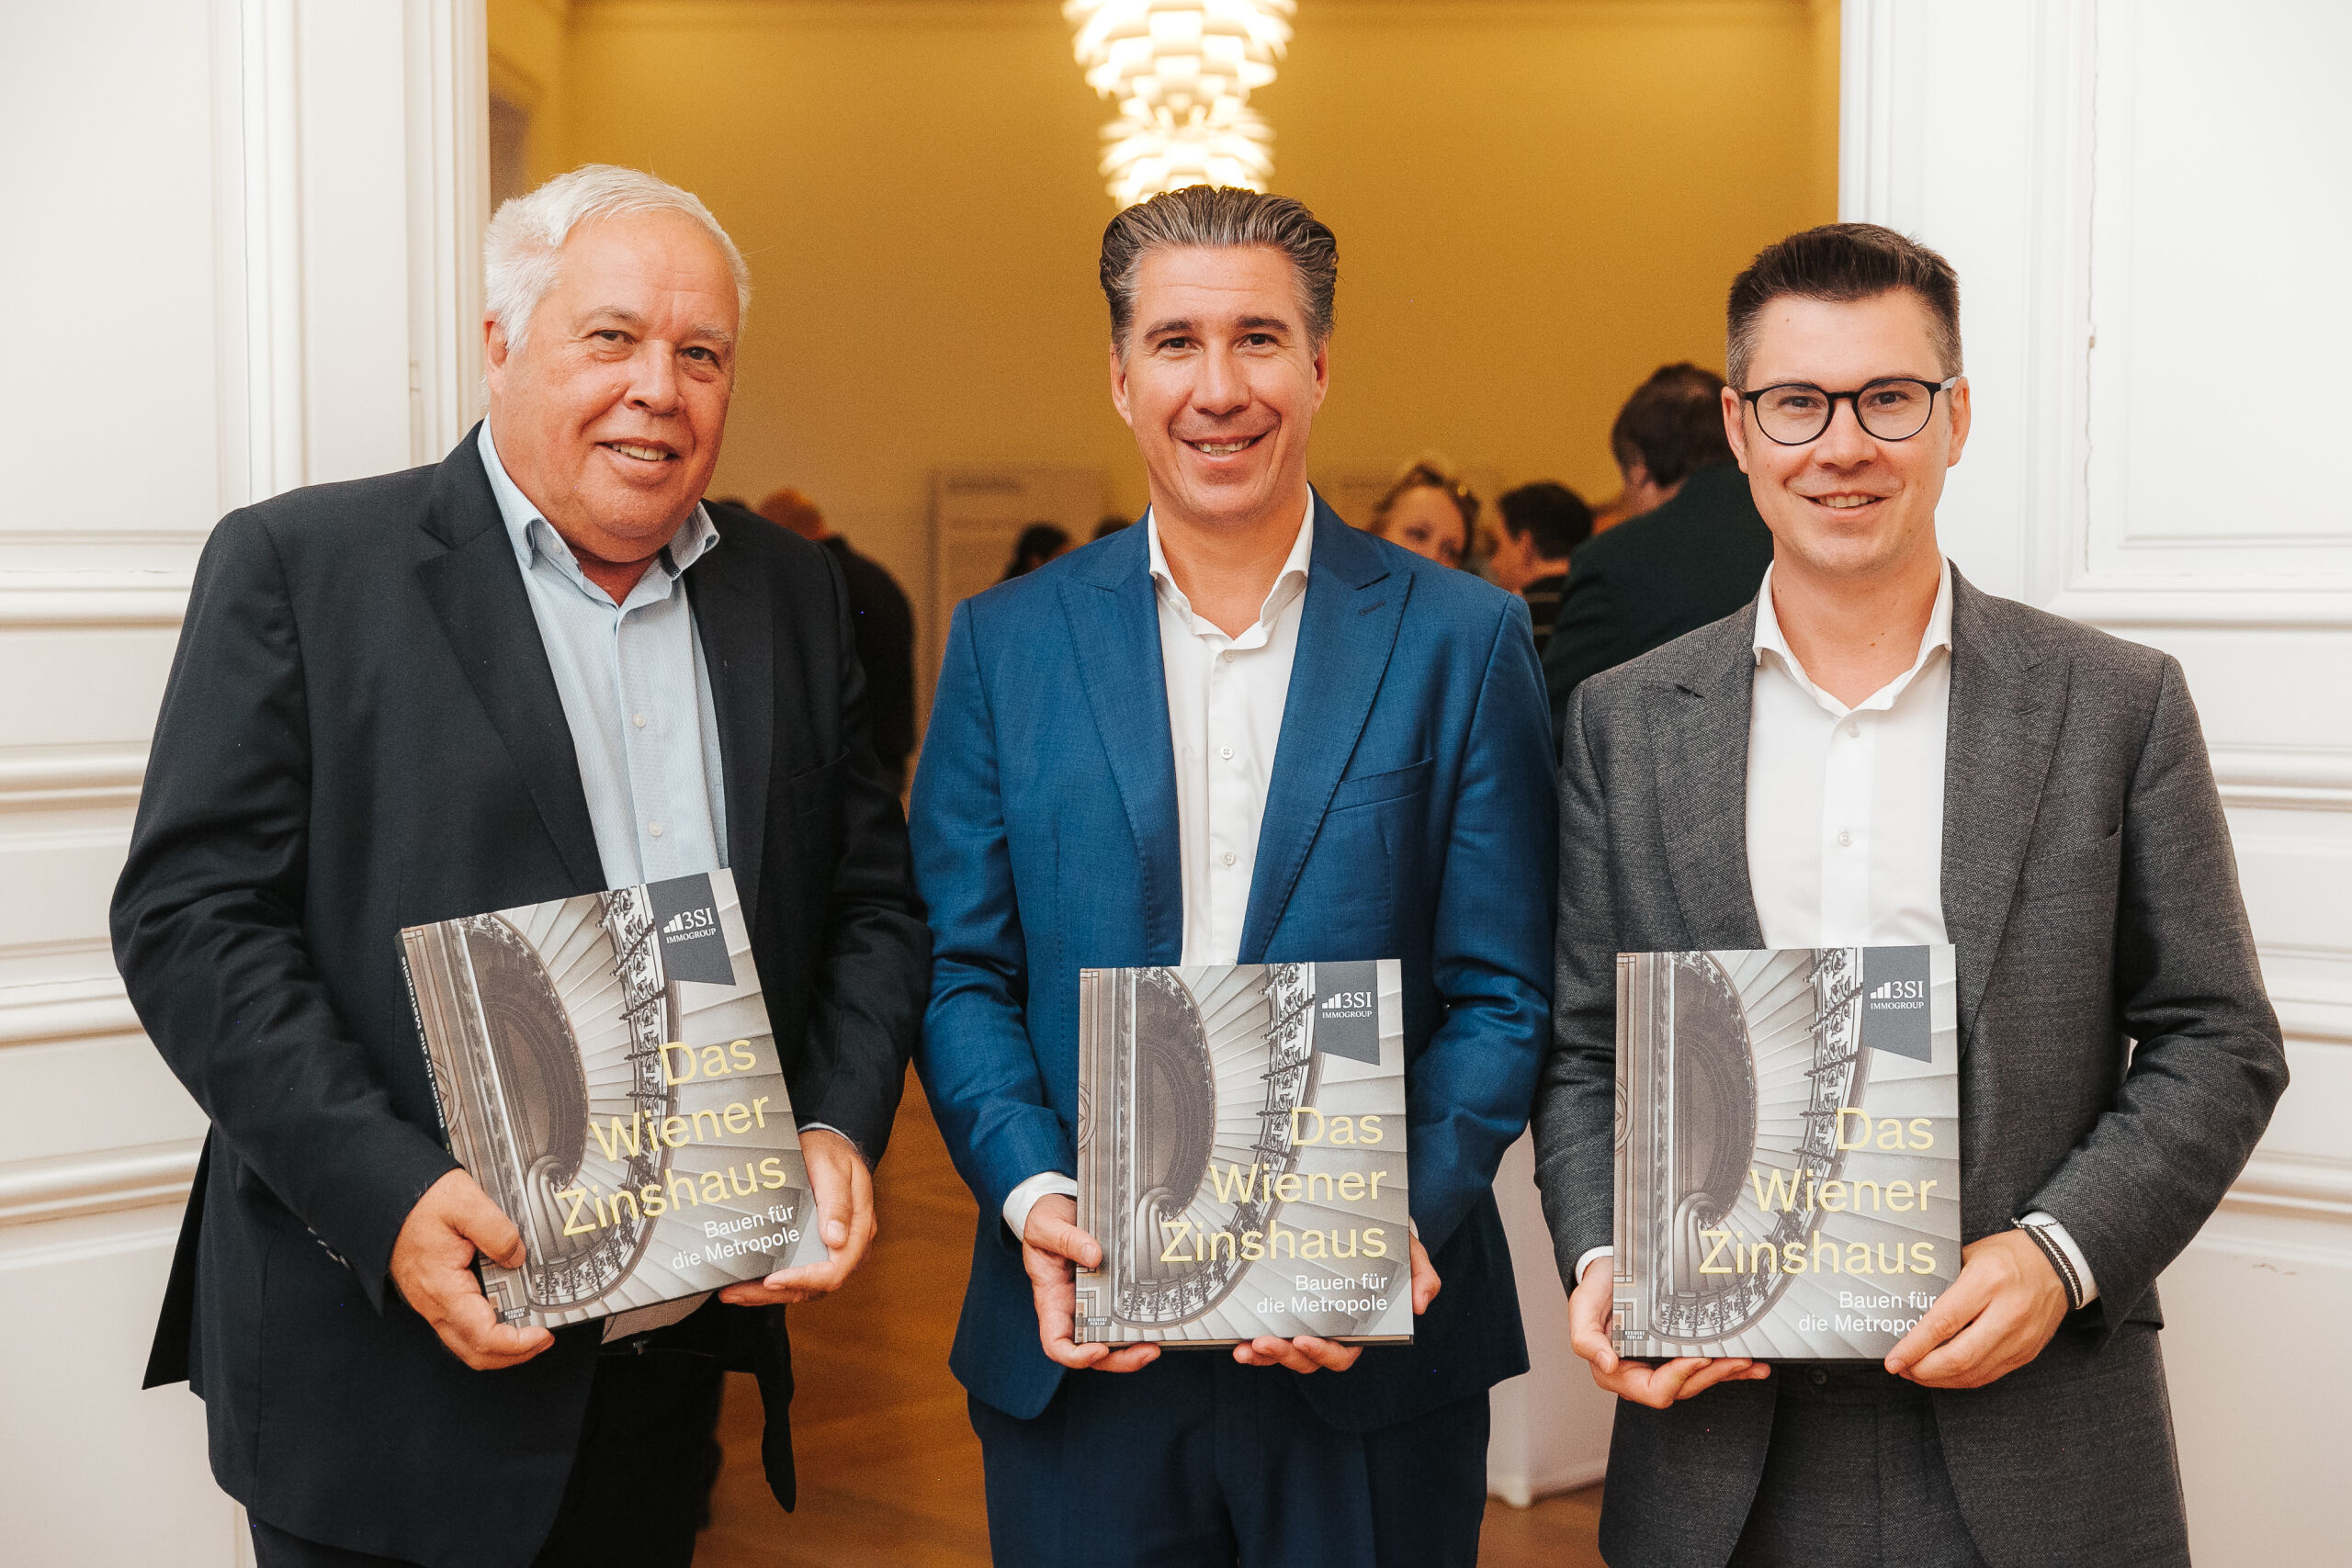 Harald, Michael und Claus Schmidt präsentieren stolz das im April erschienene Fachbuch zur Zinshausgeschichte Wiens